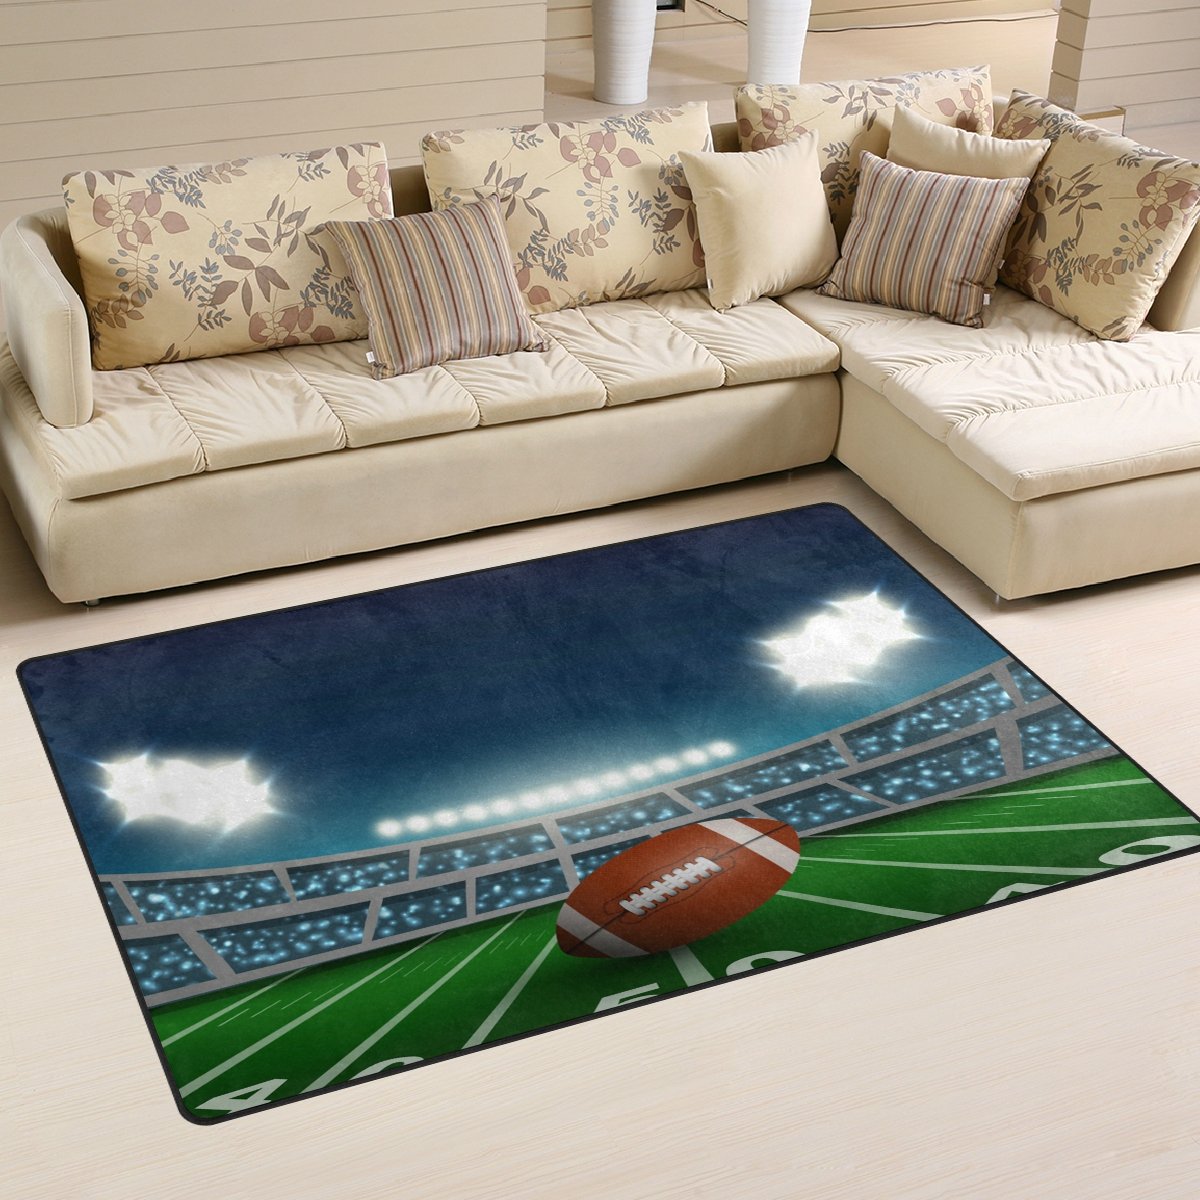 Use7 American Football Stadion Teppich Teppiche rutschfeste Bodenmatte Fußmatte Fußmatten 100 x 150 cm für Wohnzimmer Schlafzimmer